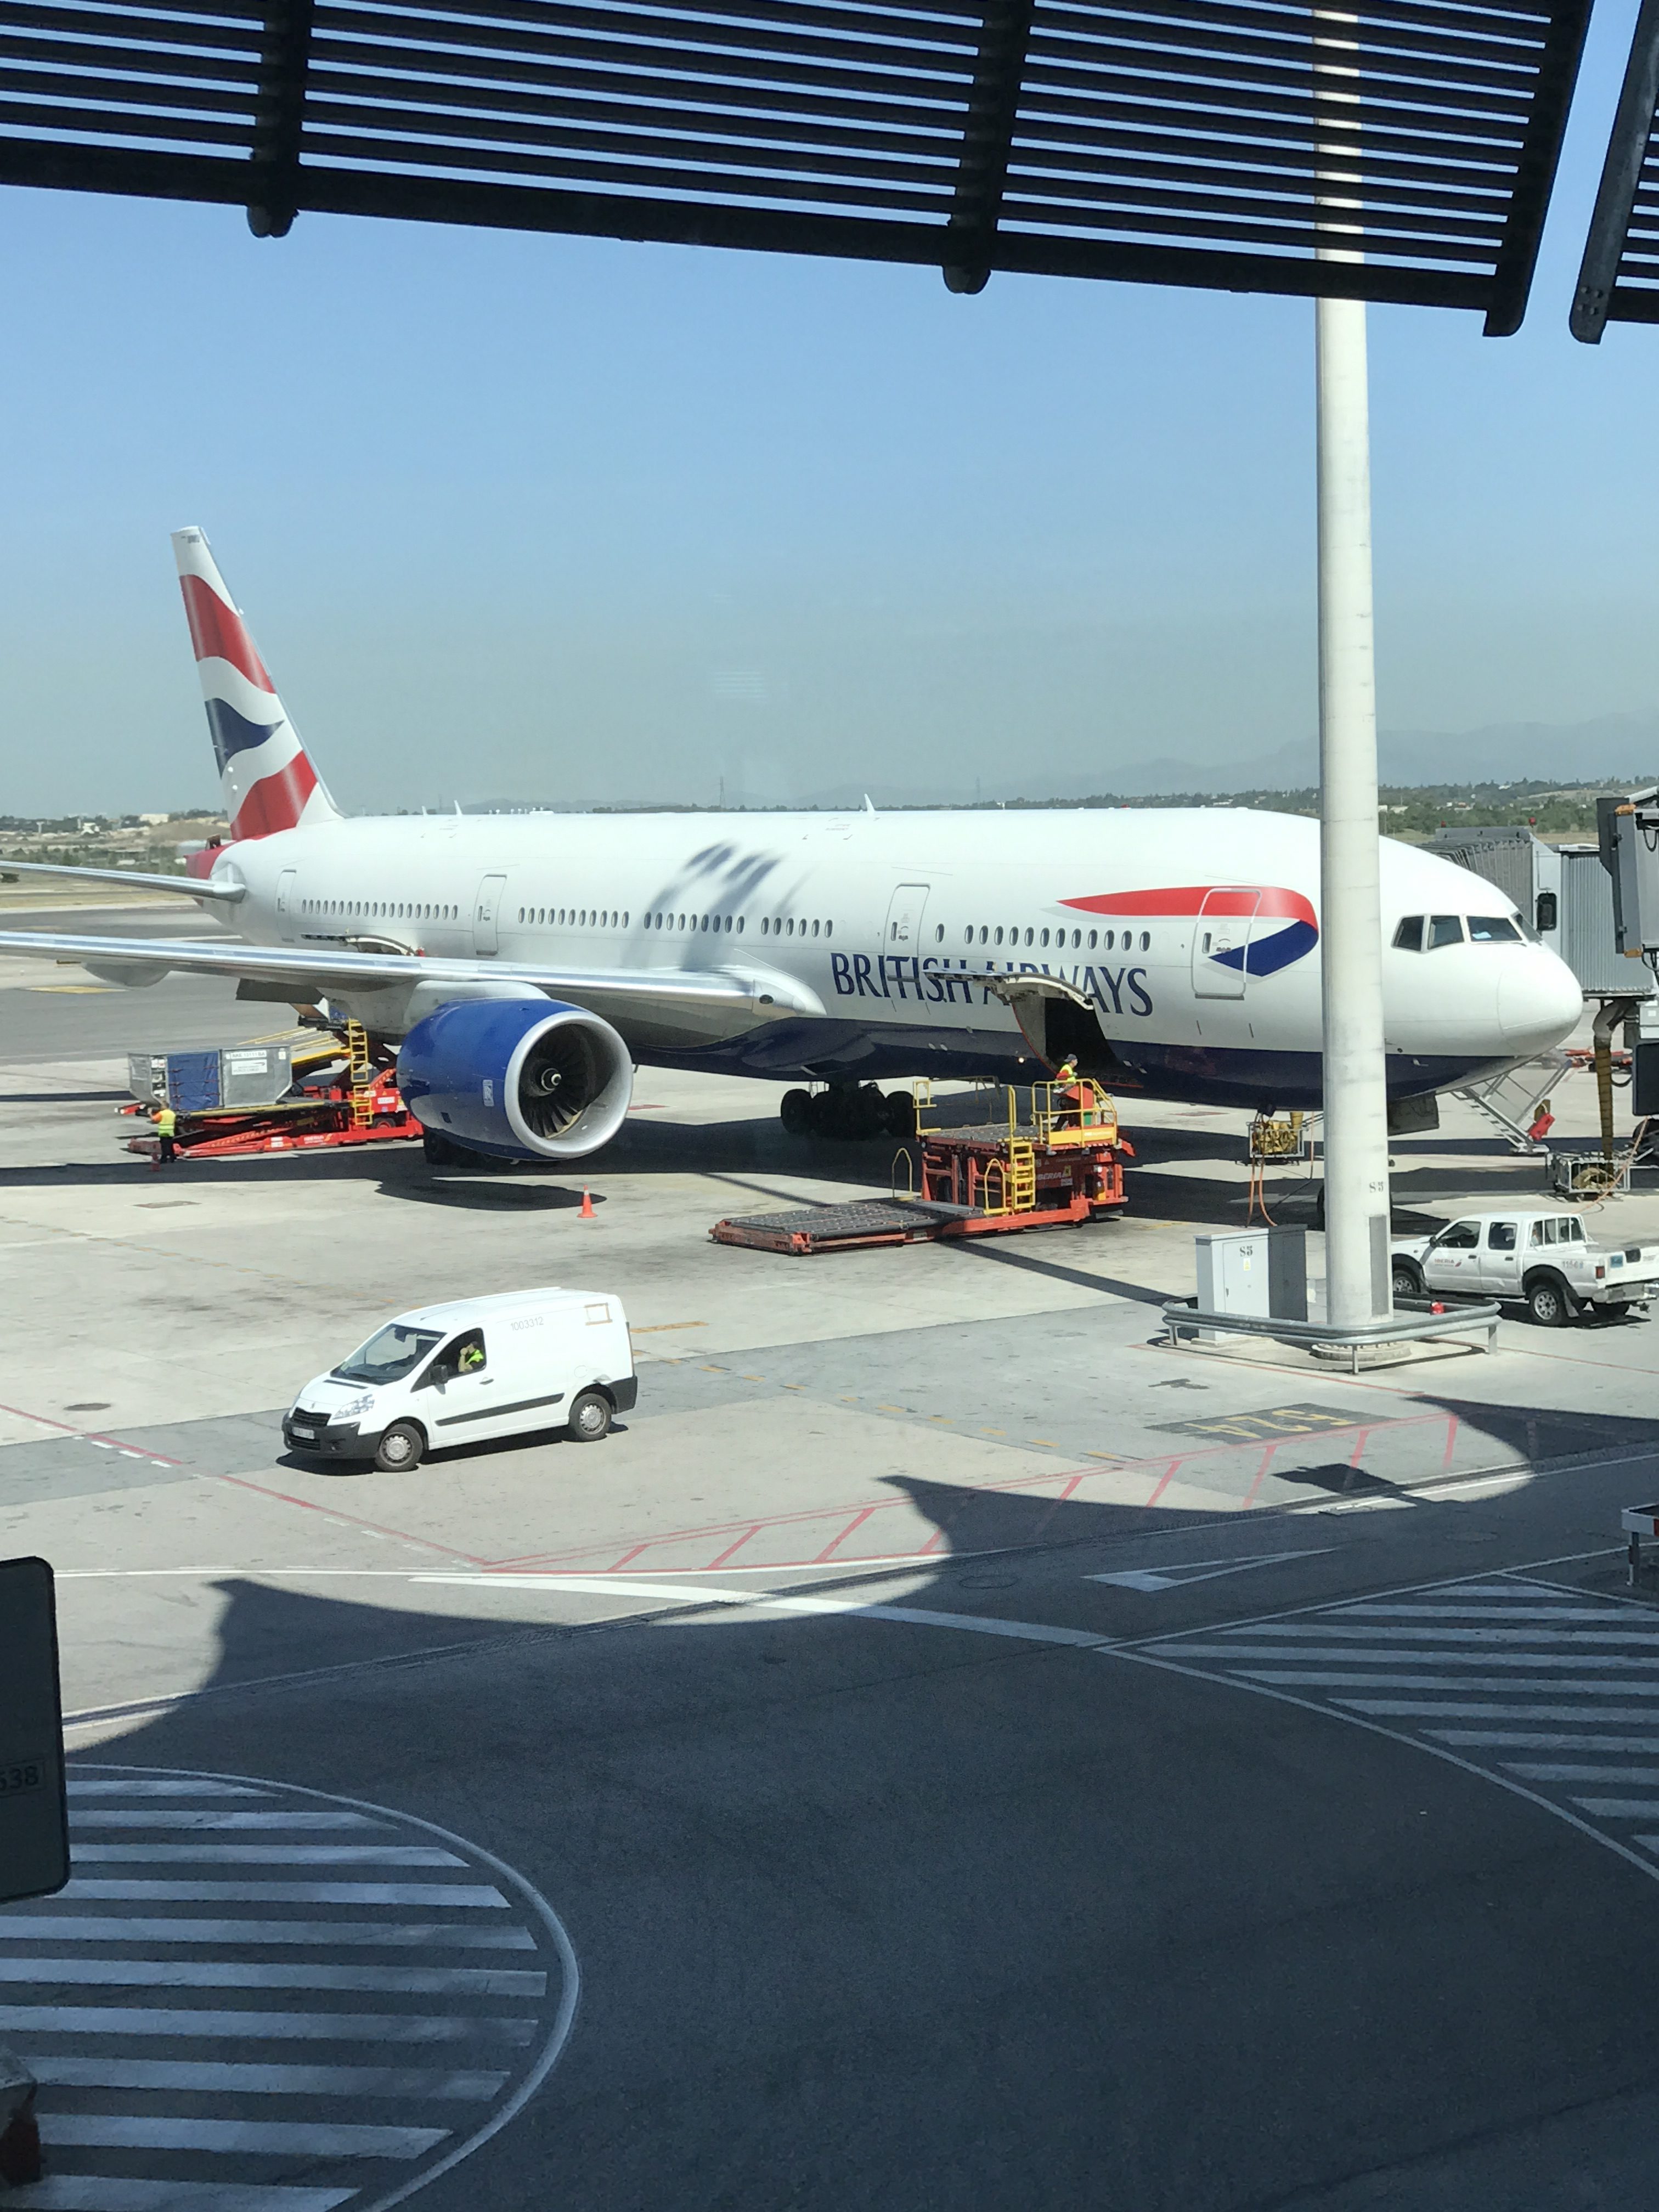 British Airways 777-200 at Madrid